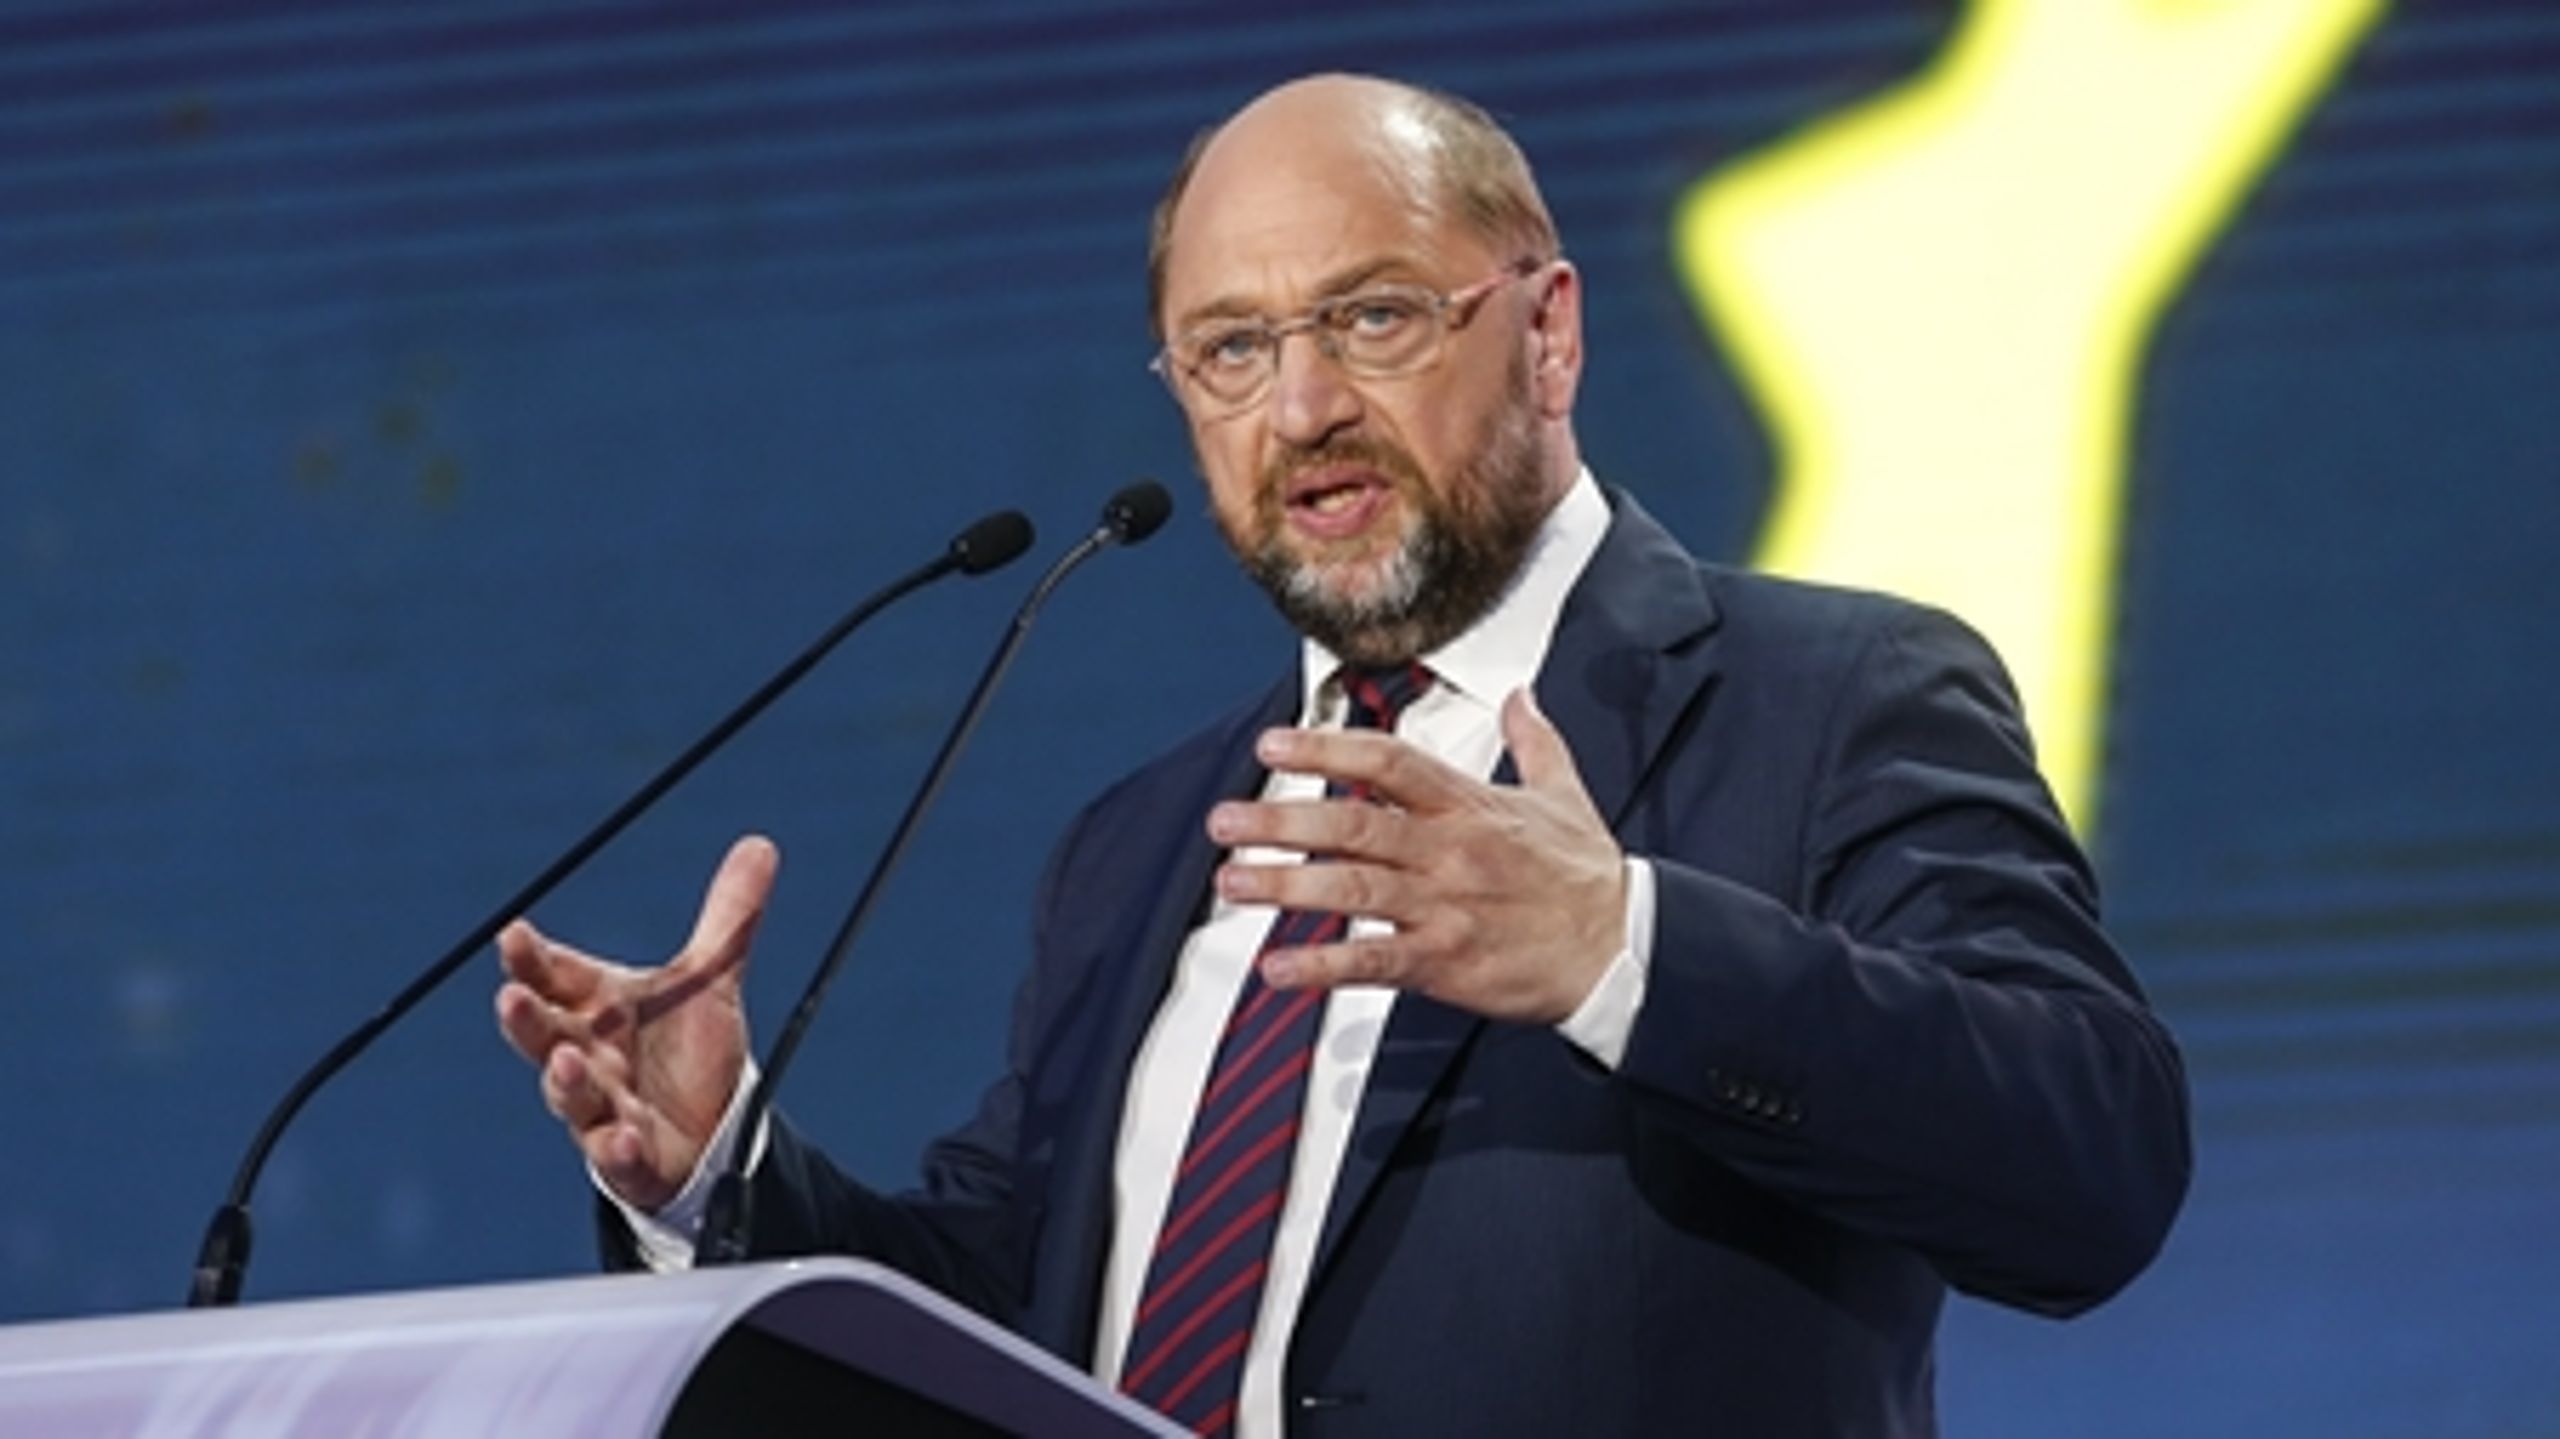 De europæiske socialdemokraters Martin Schulz har ikke opgivet at få topjobbet som EU-Kommissionens næste formand.